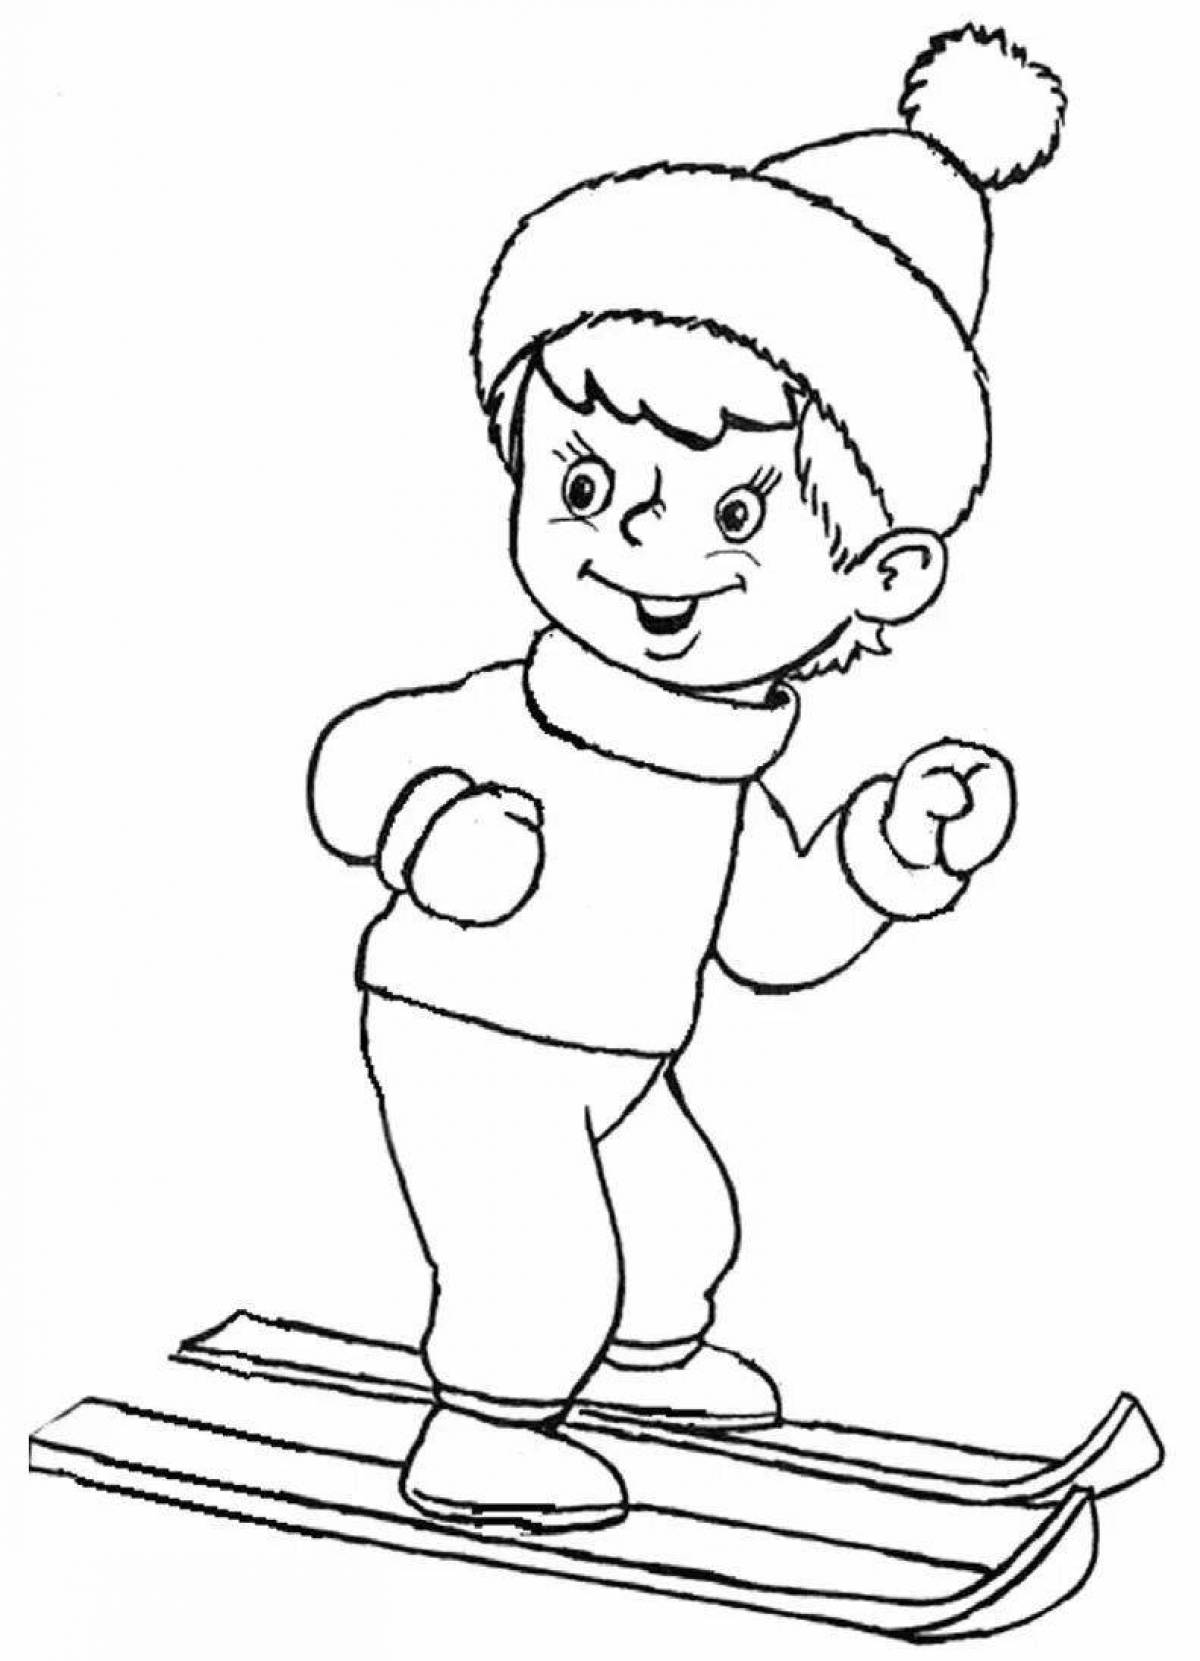 Radiant coloring page мальчик в зимней одежде